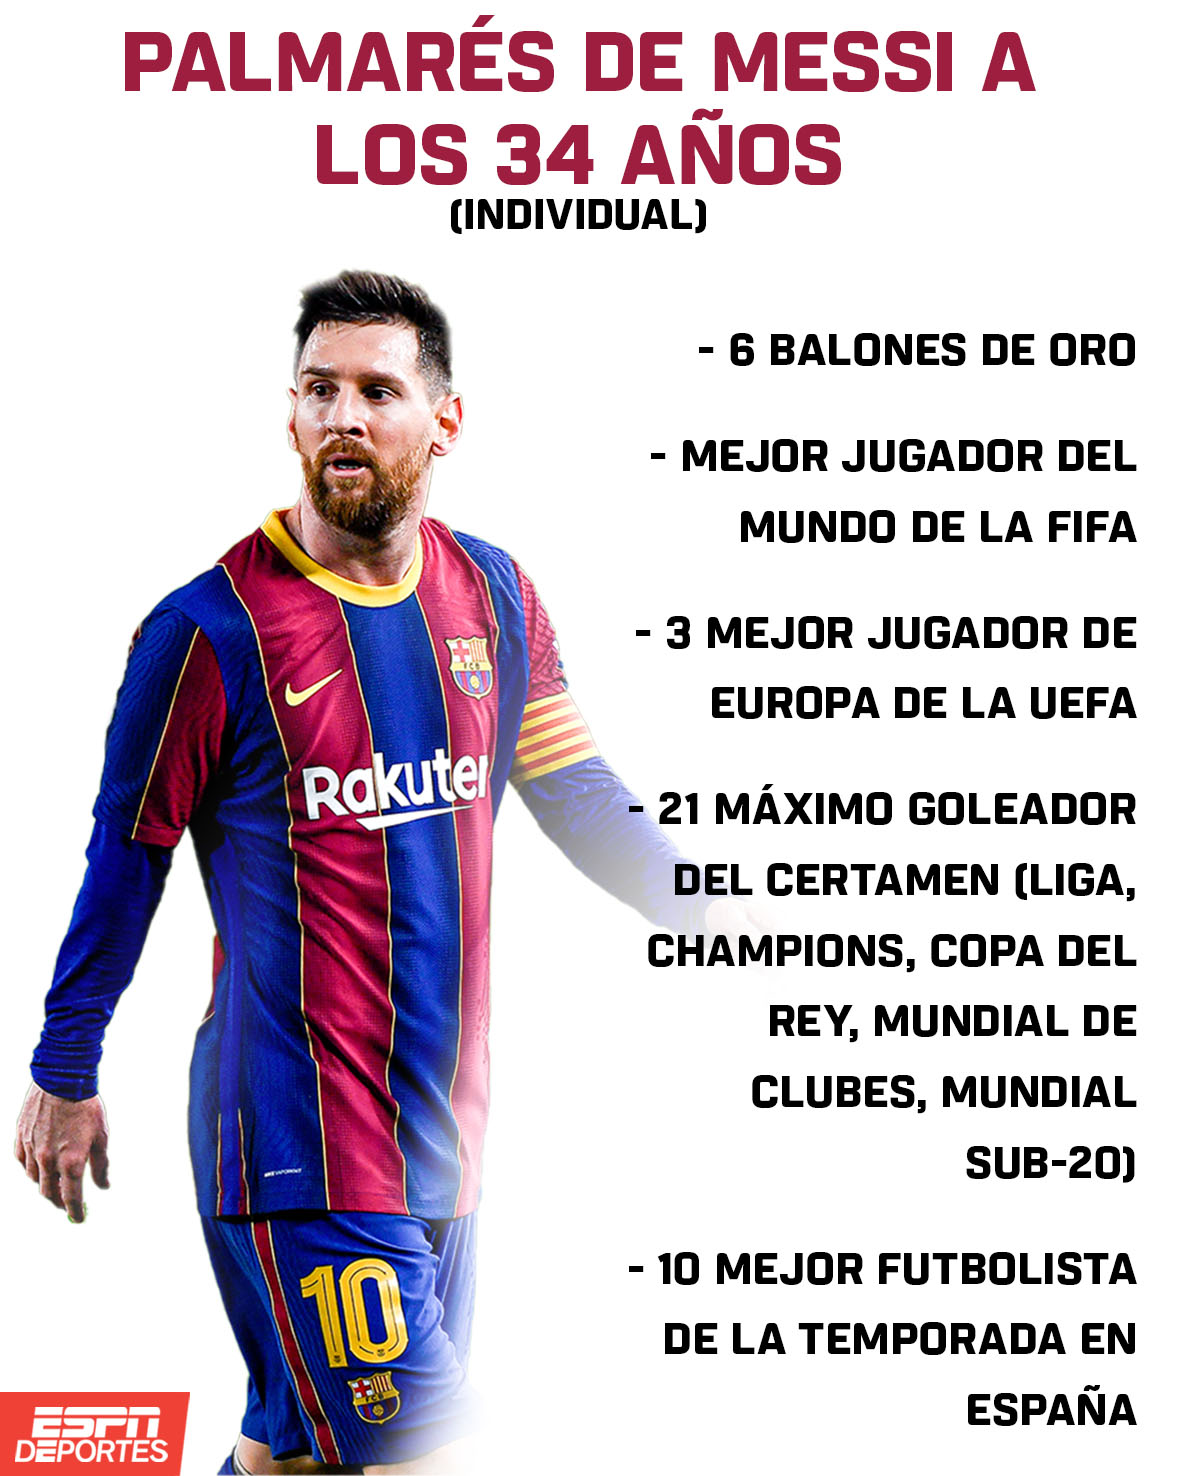 ¿Cuántos mundiales sub 20 ha ganado Messi